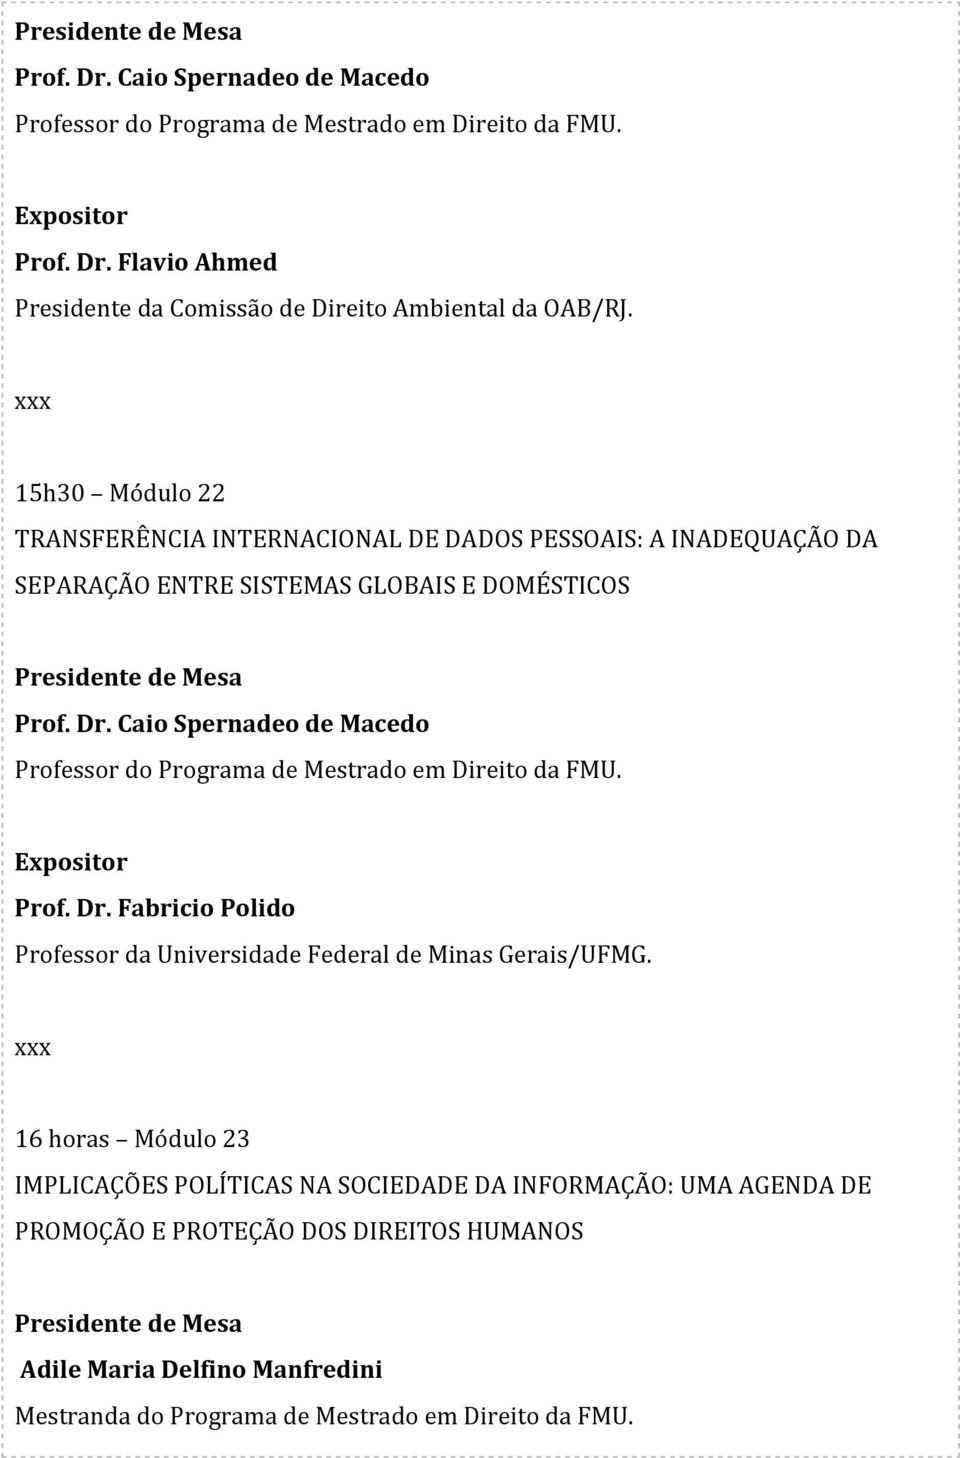 Caio Spernadeo de Macedo Professor do Programa de Mestrado em Direito da FMU. Prof. Dr. Fabricio Polido Professor da Universidade Federal de Minas Gerais/UFMG.